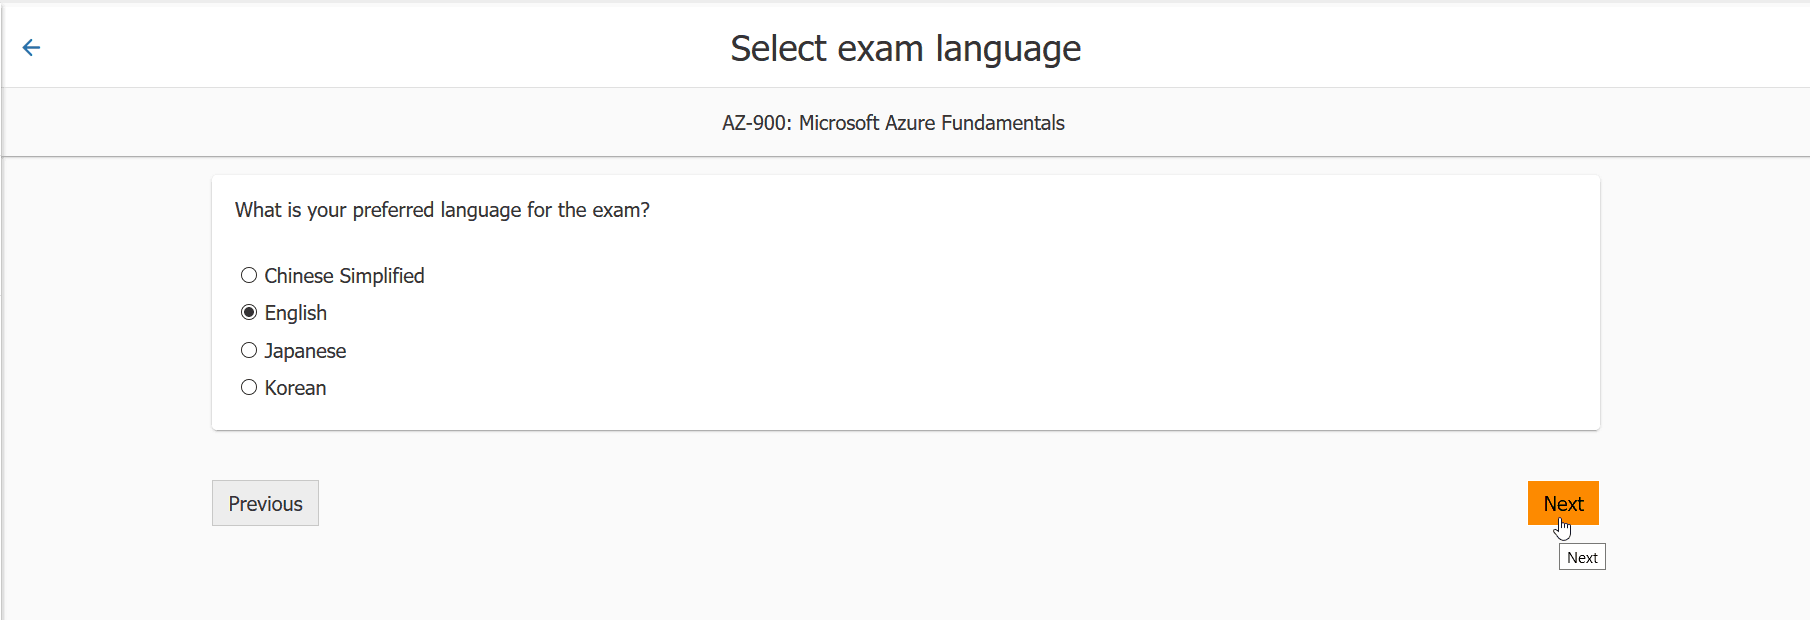 AZ-900 Exam language